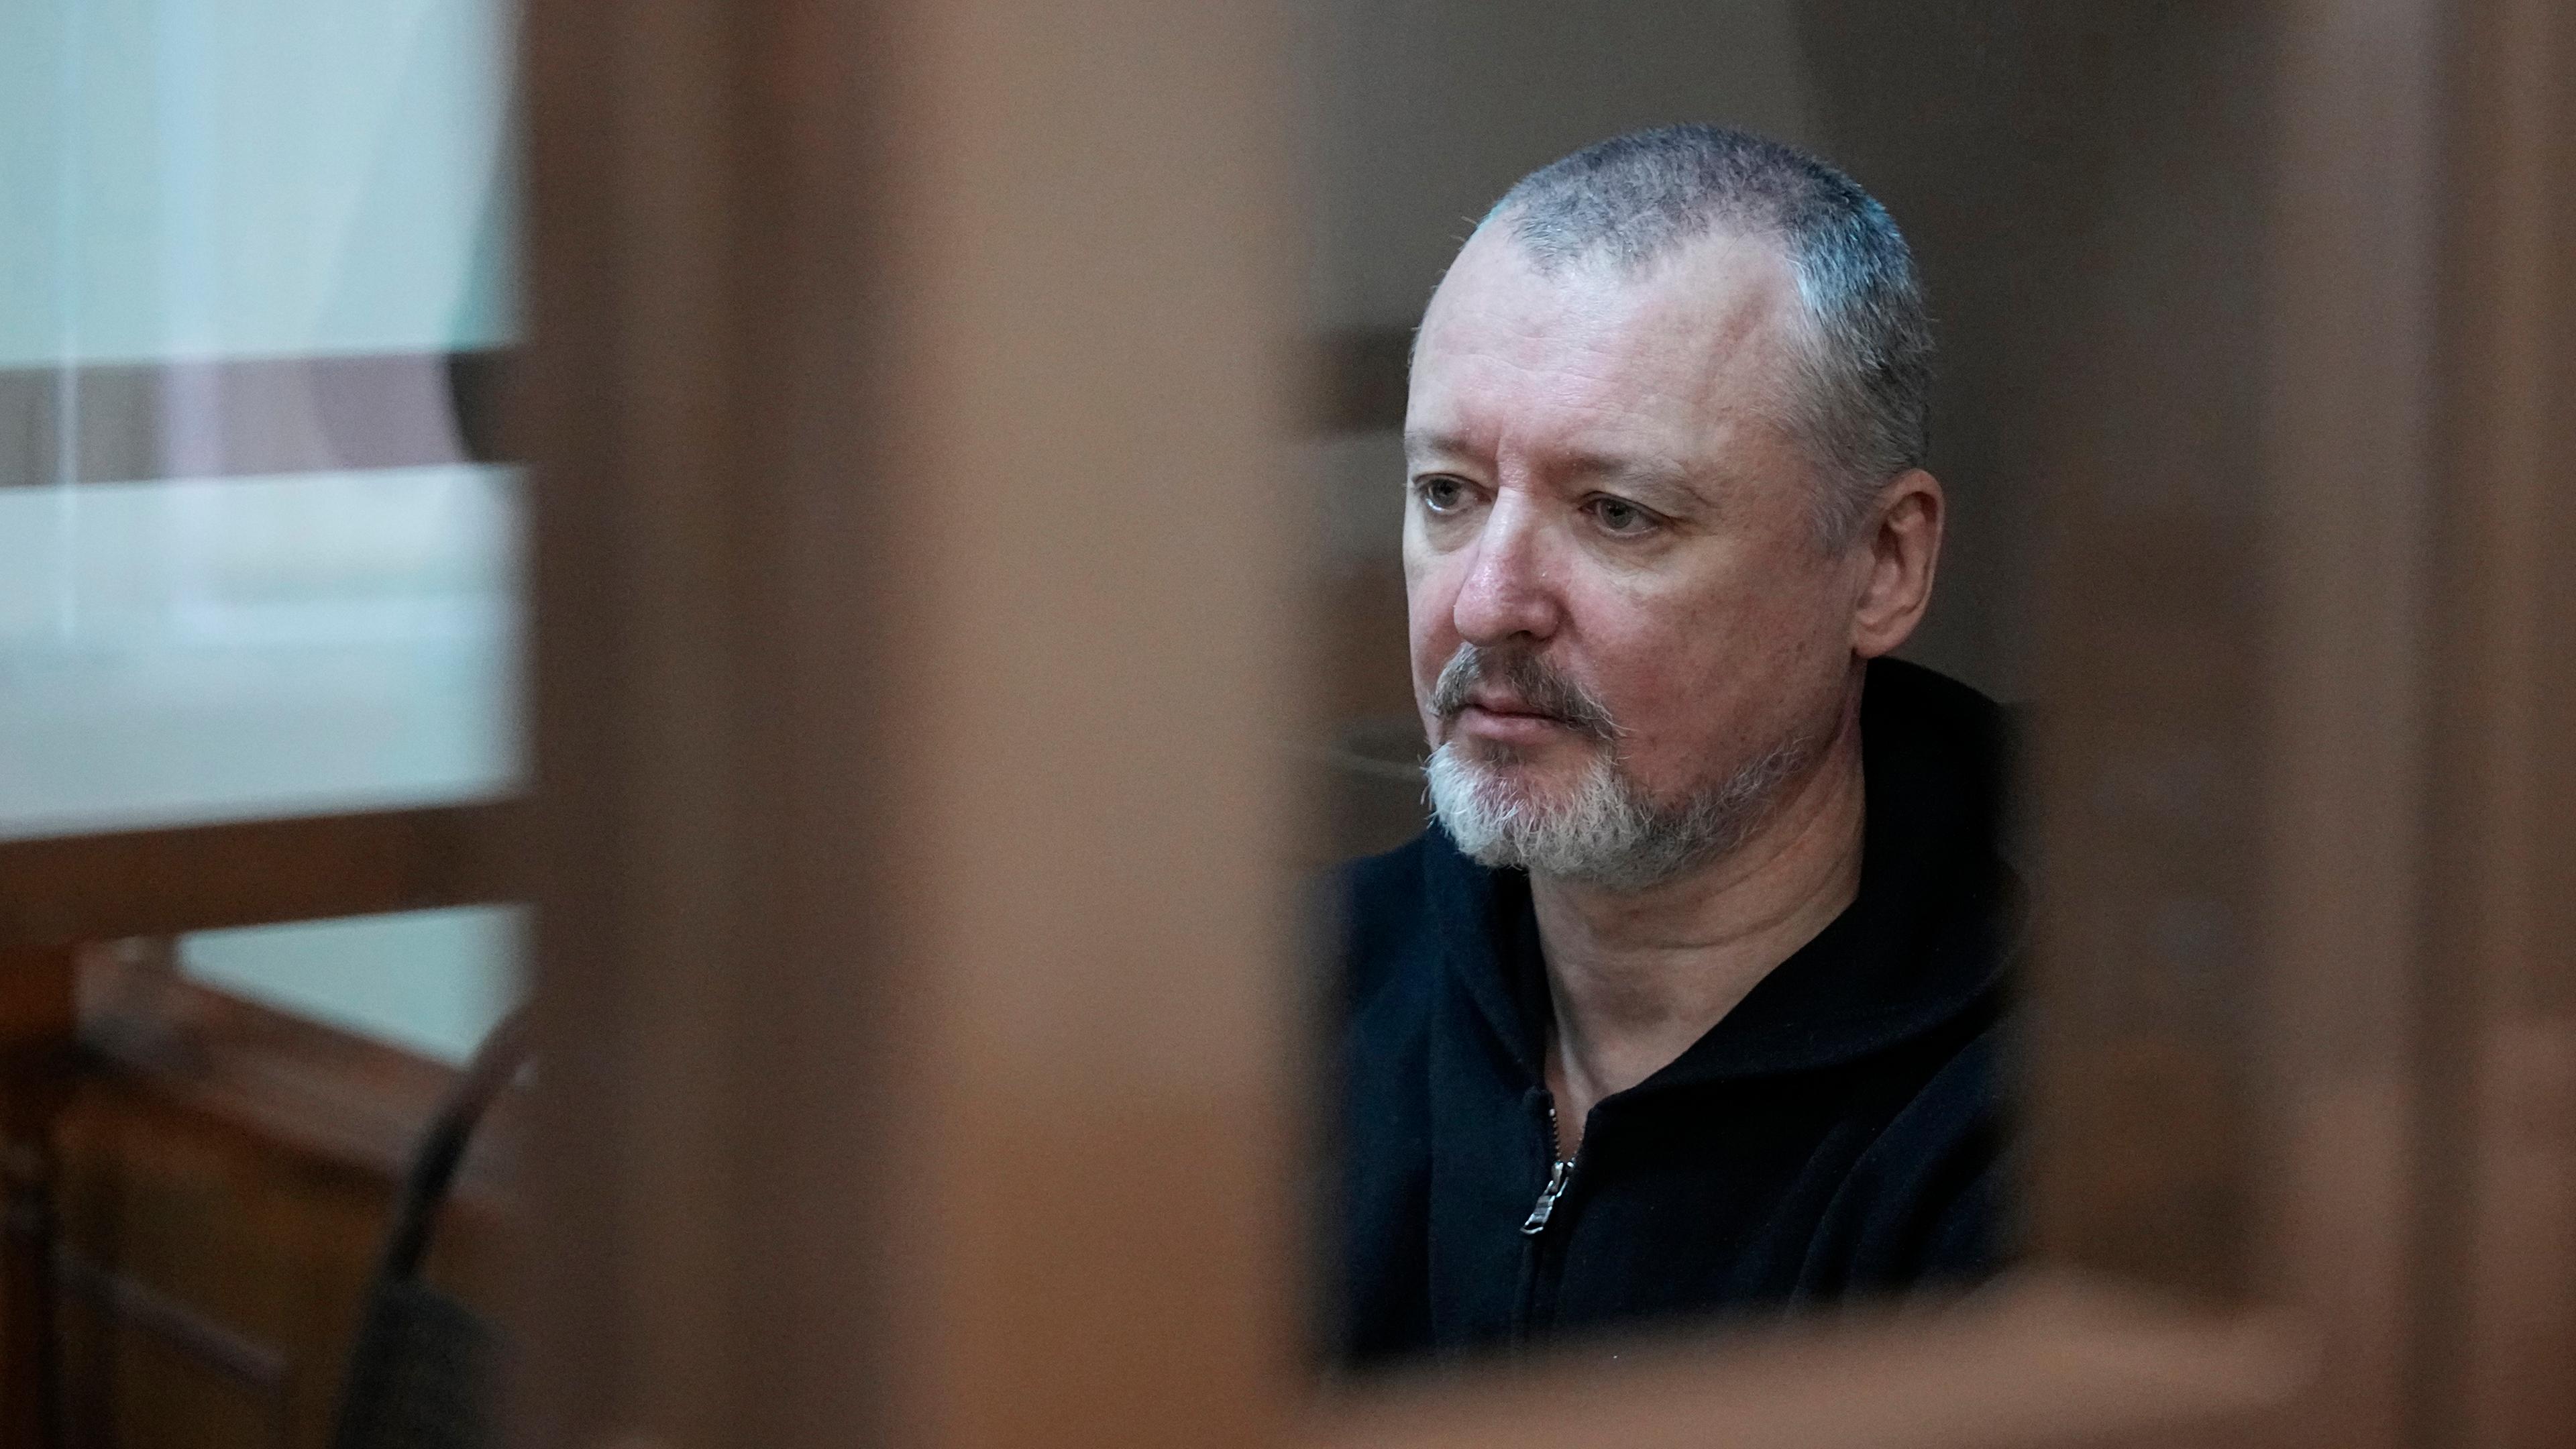 Russland, Moskau: Igor Girkin, auch bekannt als Igor Strelkov, der ehemalige Militärchef der von Russland unterstützten Separatisten in der Ostukraine, sitzt in einem Glaskäfig in einem Gerichtssaal des Moskauer Stadtgerichts